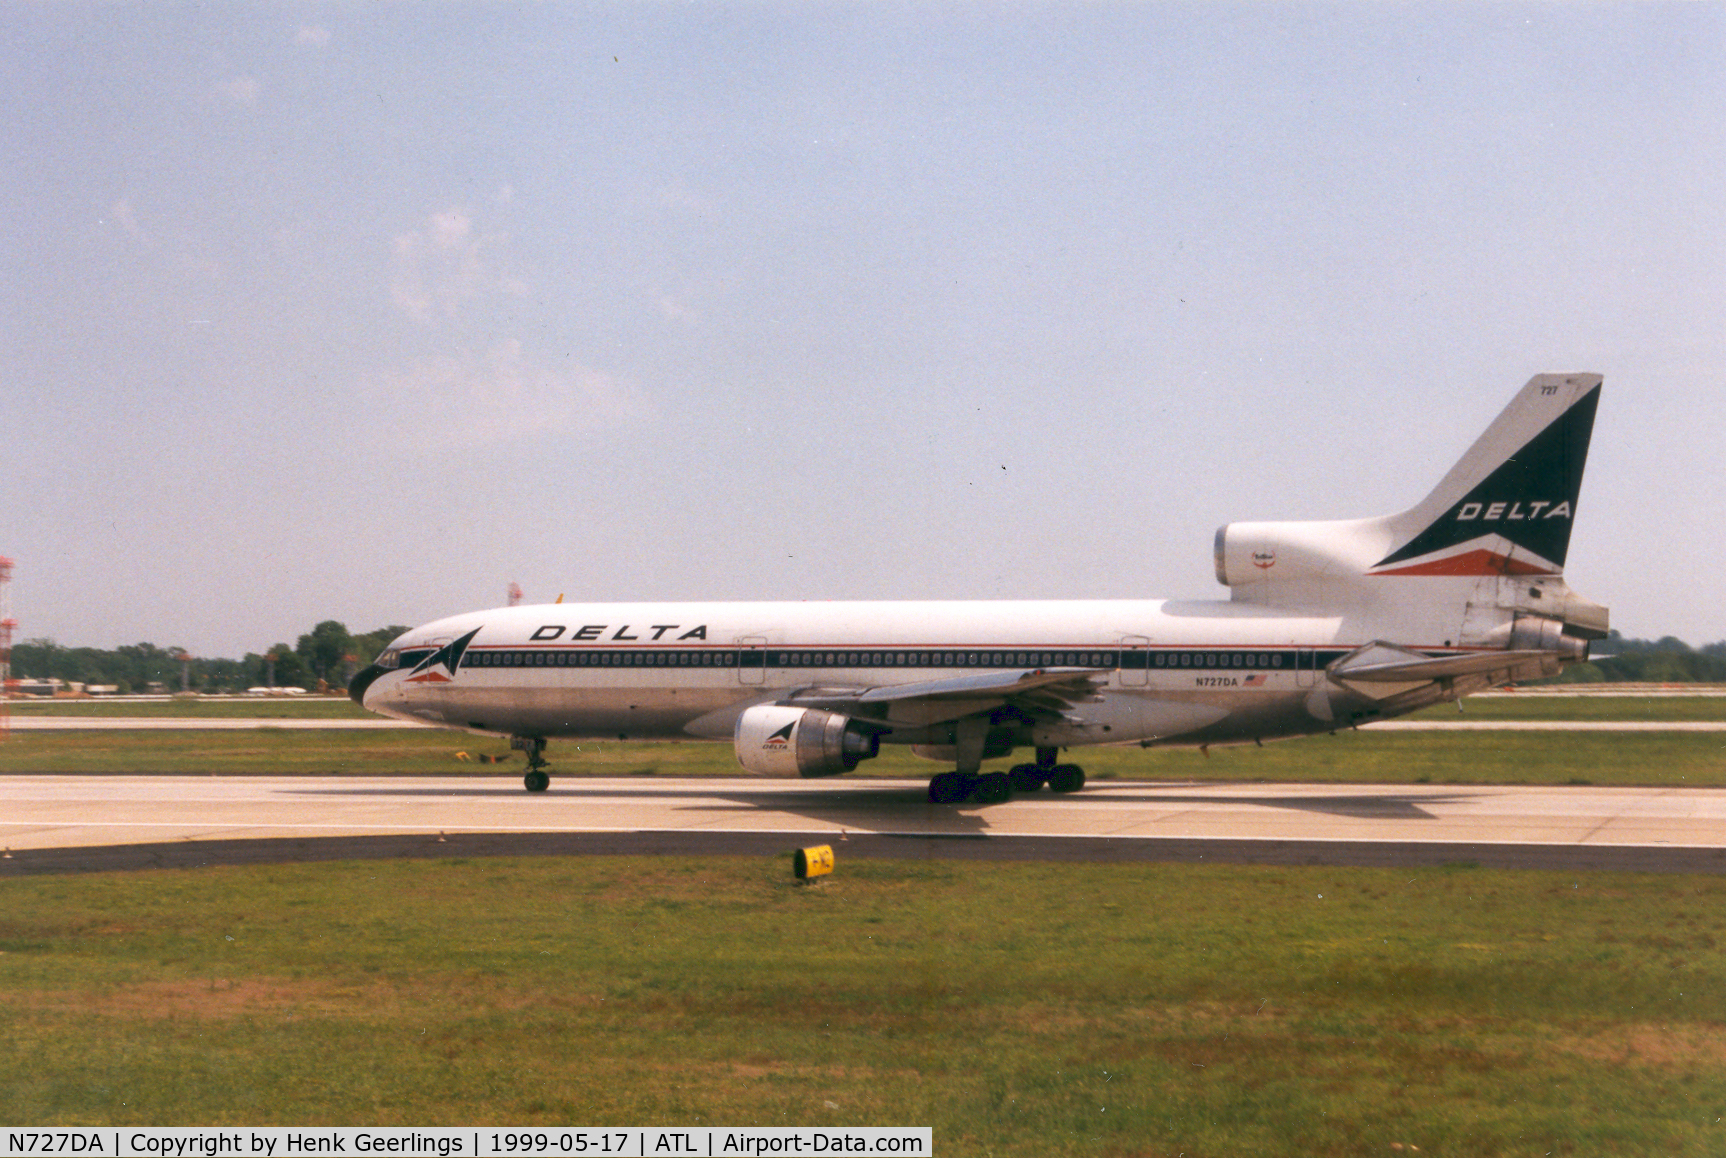 N727DA, 1979 Lockheed L-1011-385-1 TriStar 1 C/N 193C-1167, Delta